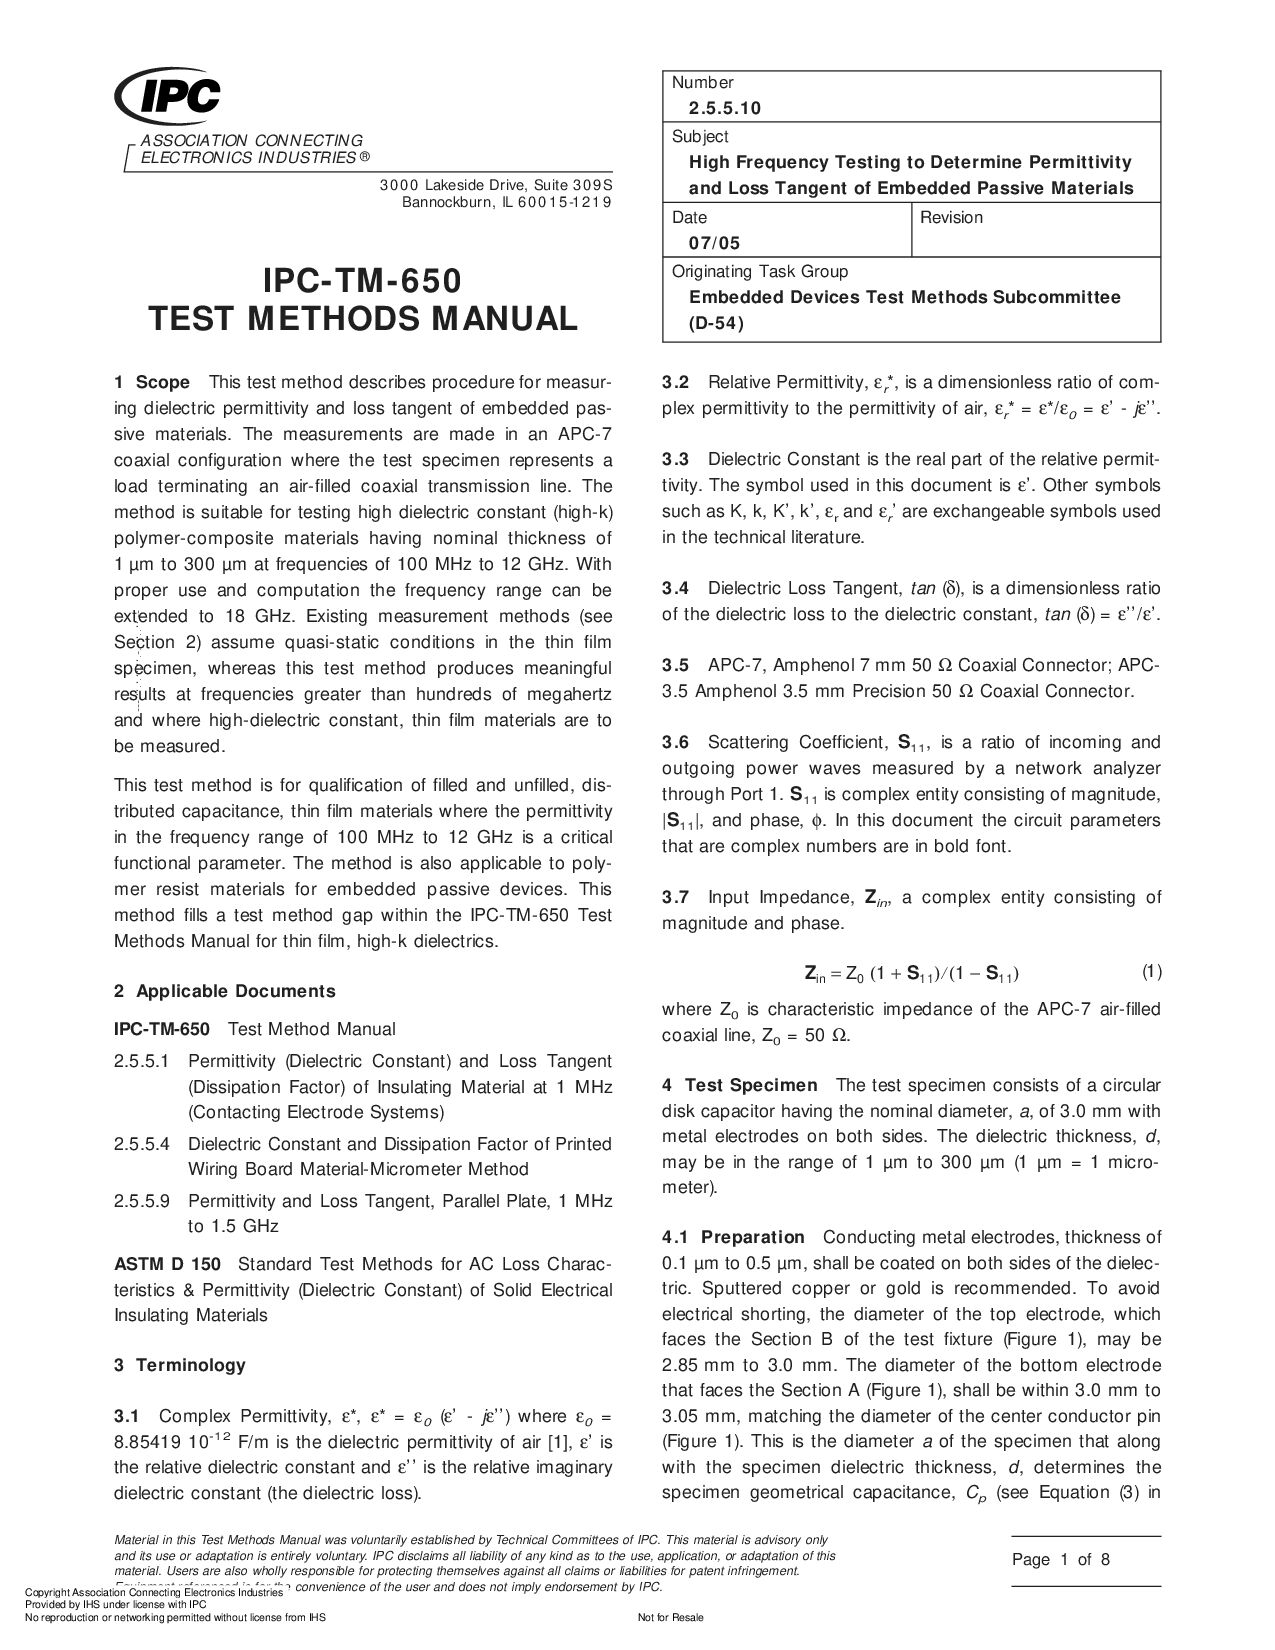 IPC TM-650 2.5.5.10-2005